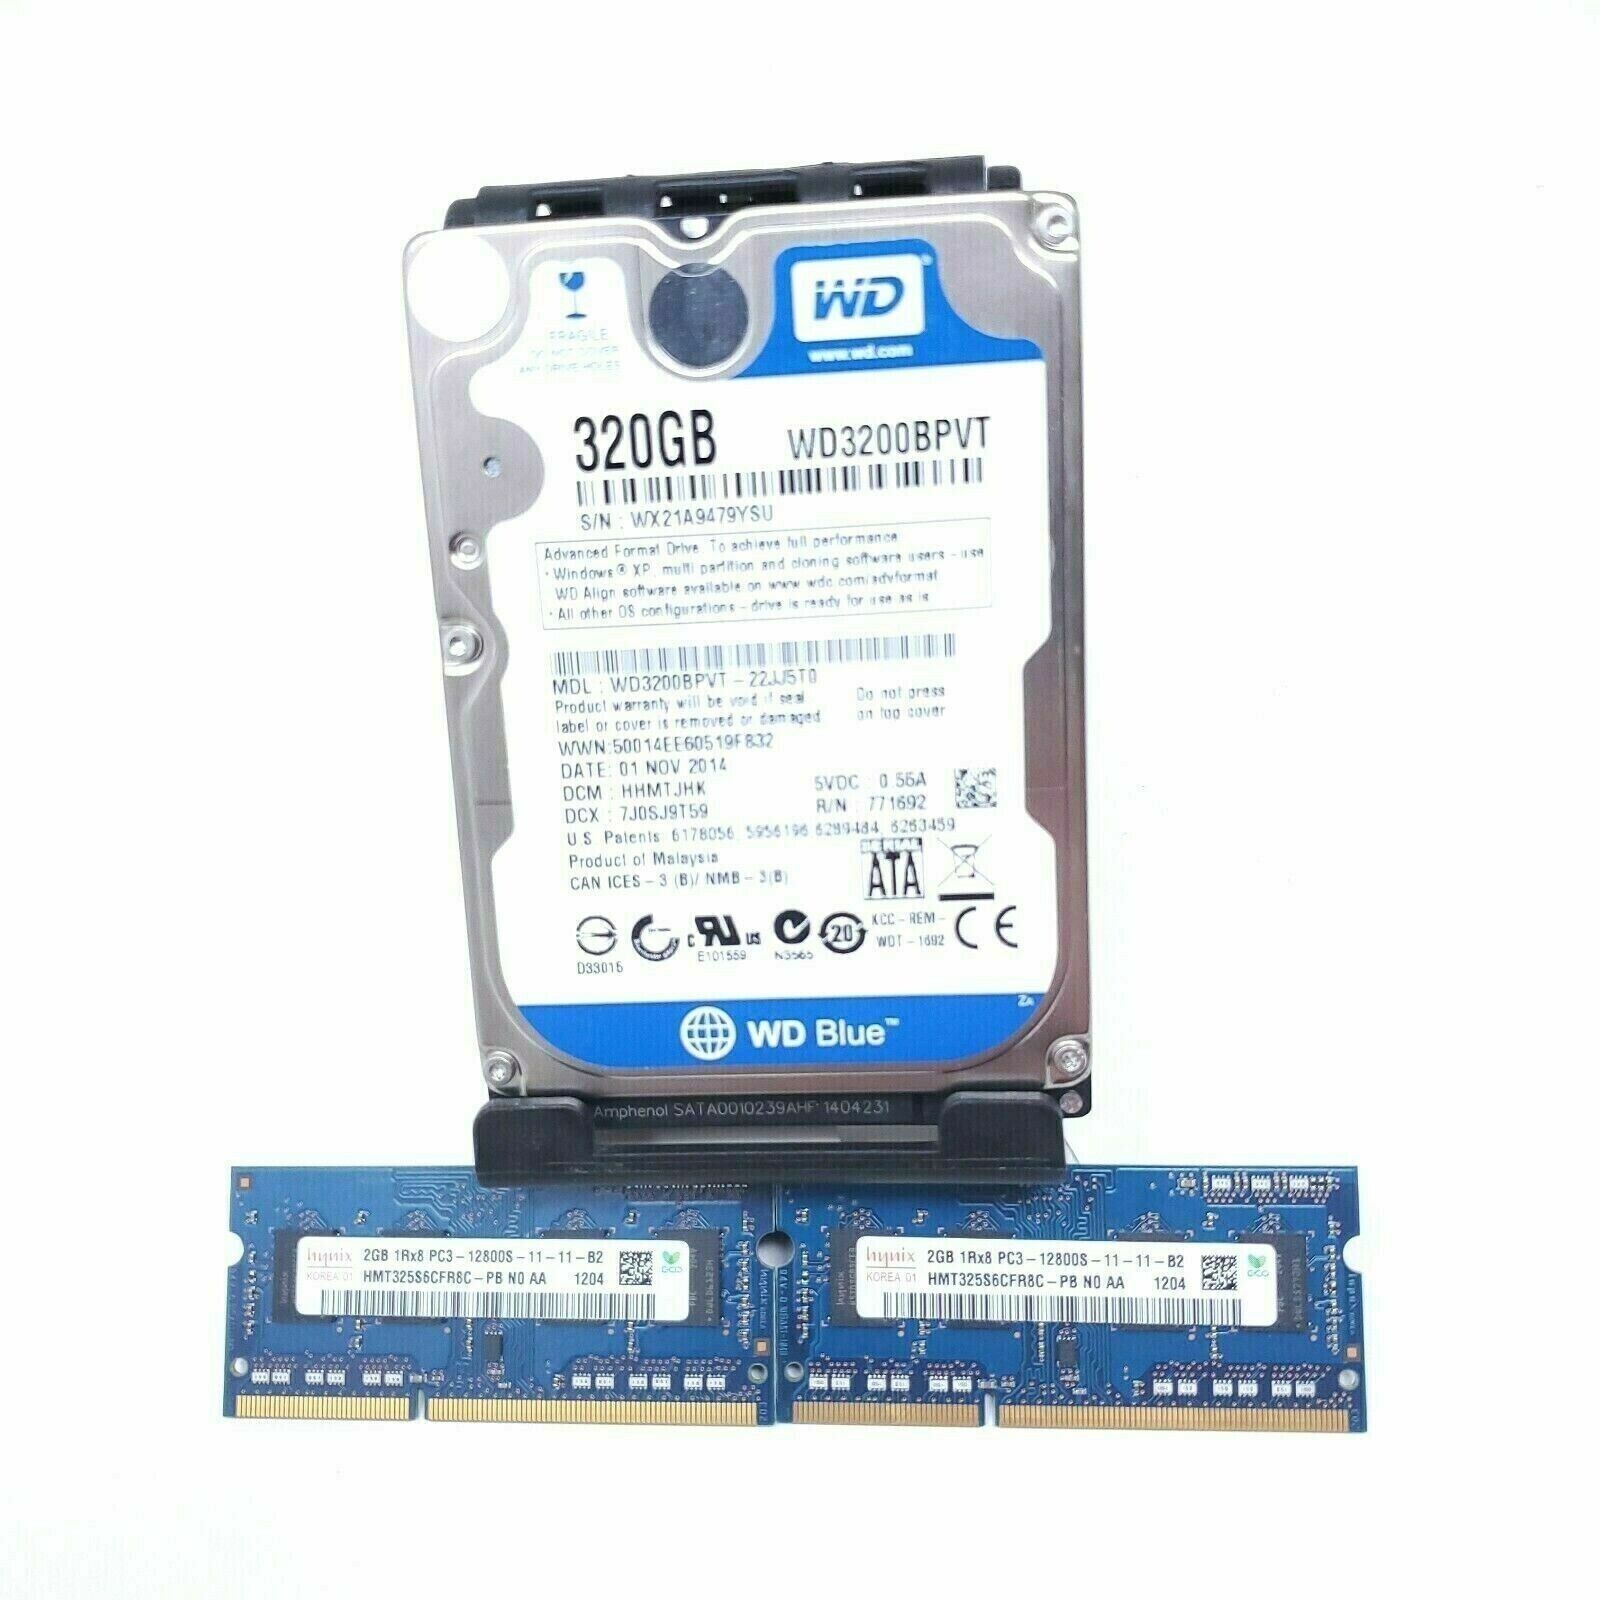 Hynix 4GB 2x 2GB DDR3 RAM & WD Blue 320GB Hard Disk Drive Kit Apple Macbook Pro